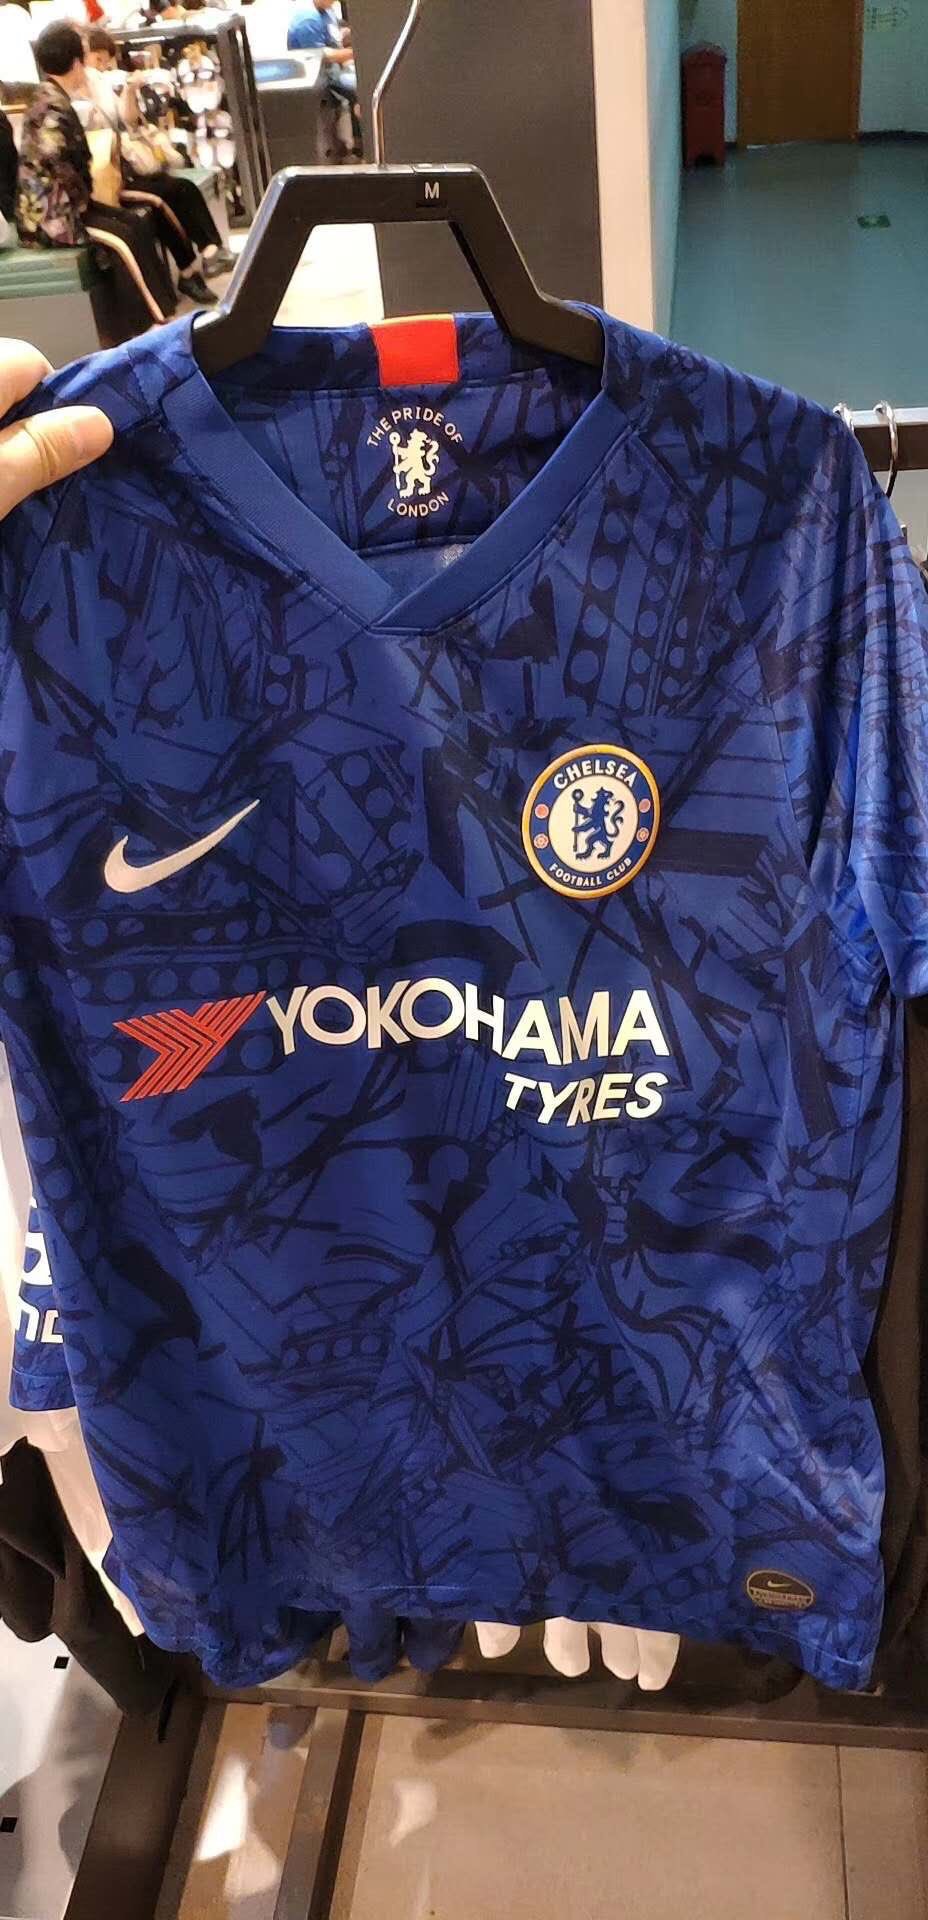 Chelsea 2020 nouveau maillot domicile foot